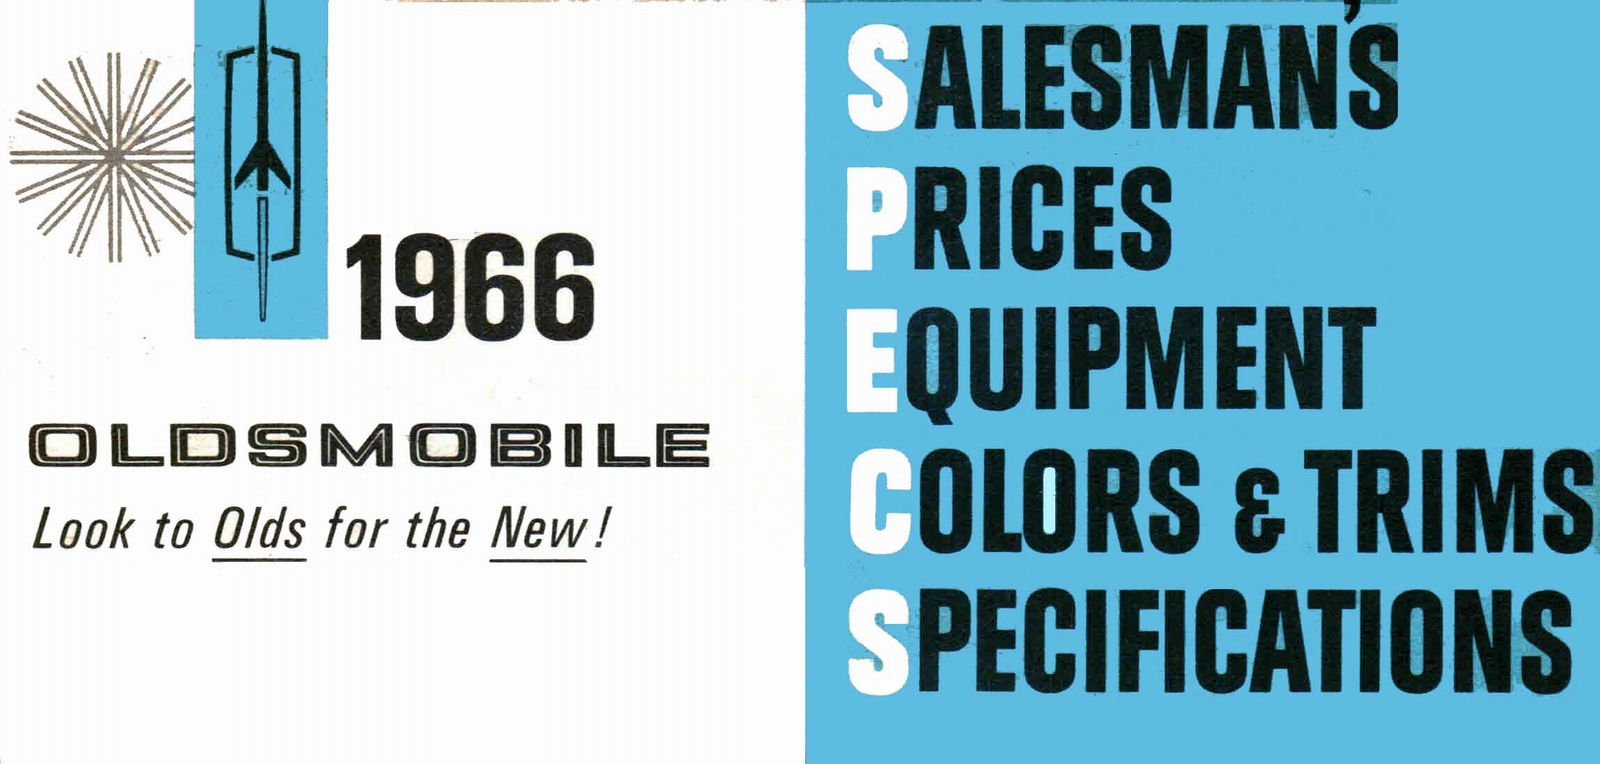 n_1966 Oldsmobile Dealer SPECS-01.jpg